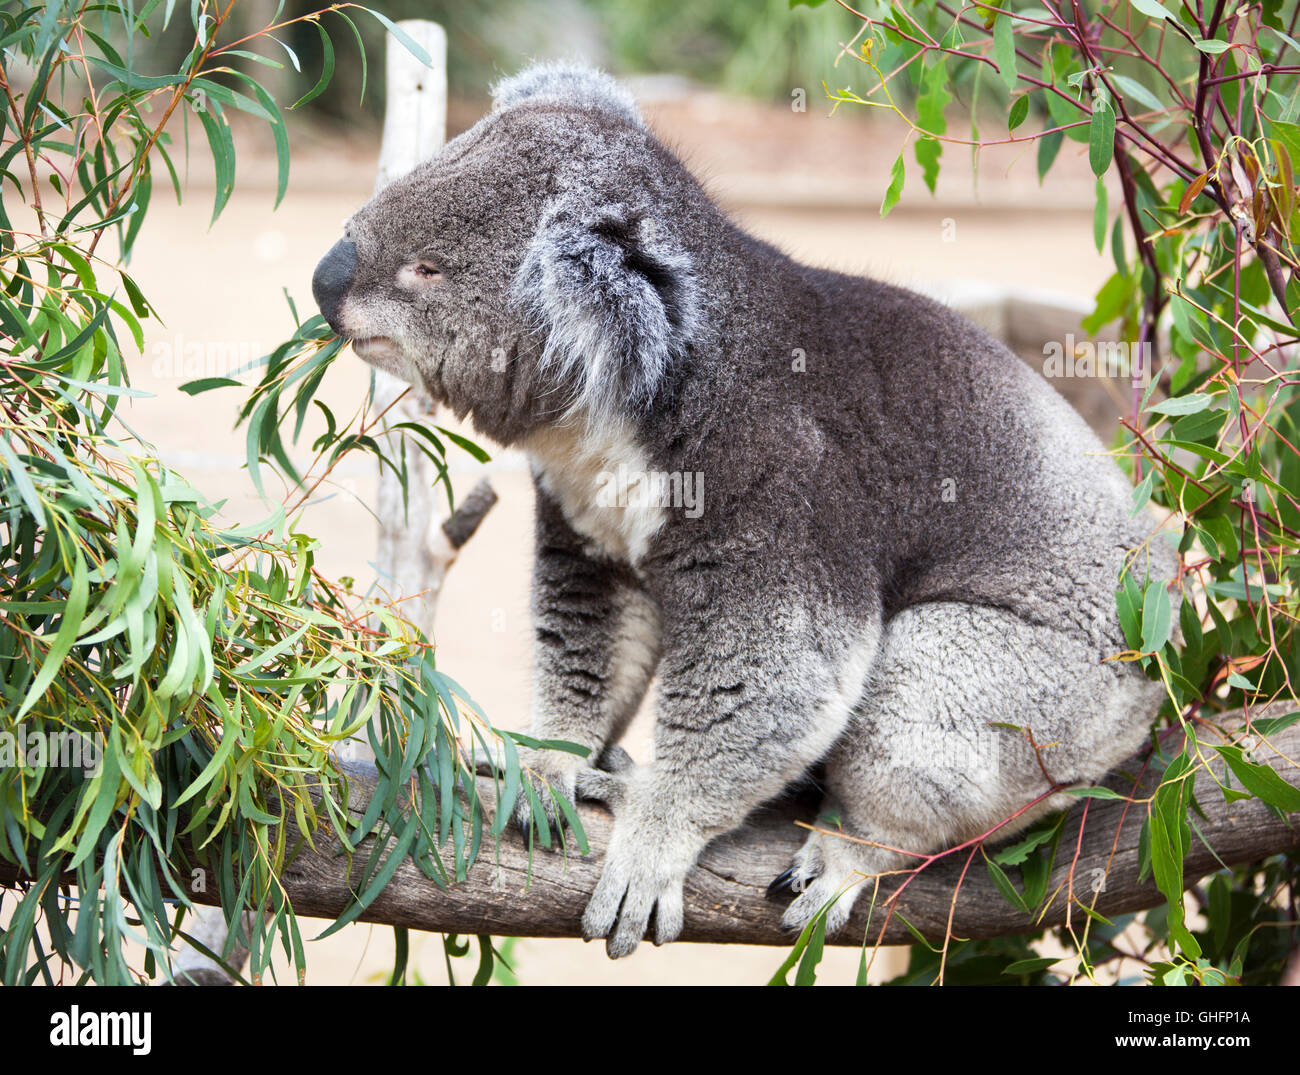 Fermer la vue du koala manger les feuilles de la faune et de la réservation (Tasmanie, Australie). Banque D'Images